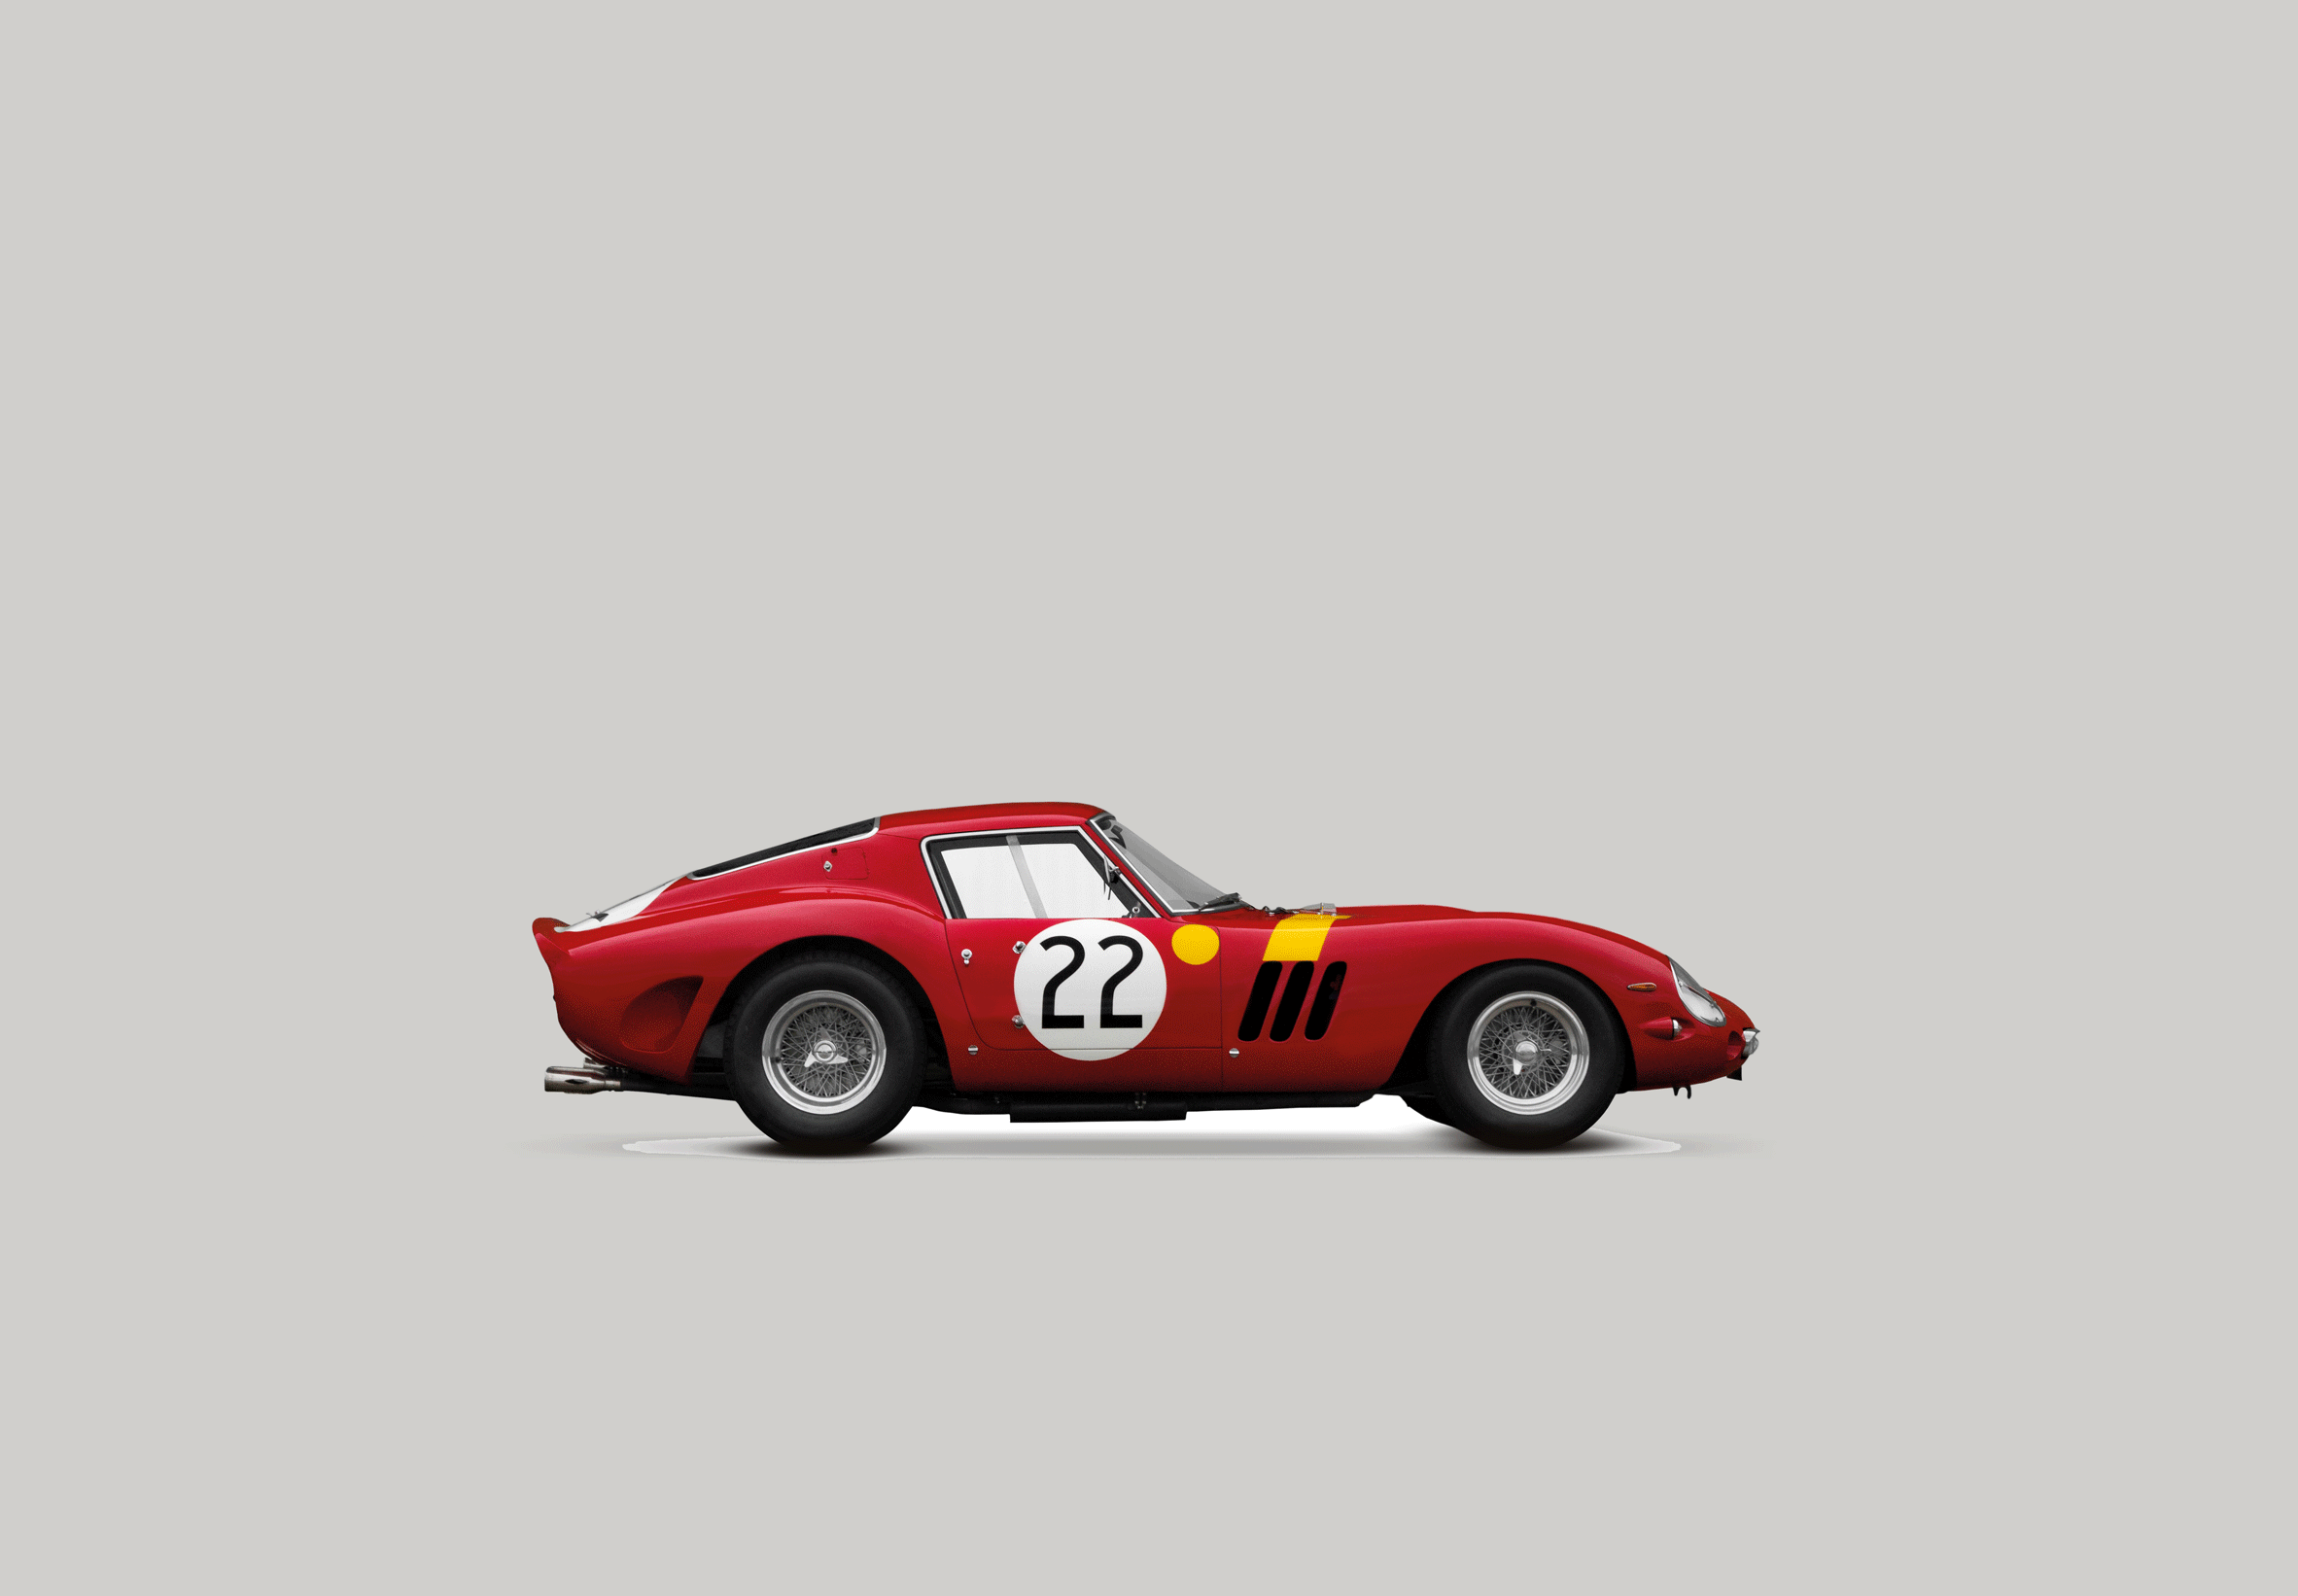 Red racing car